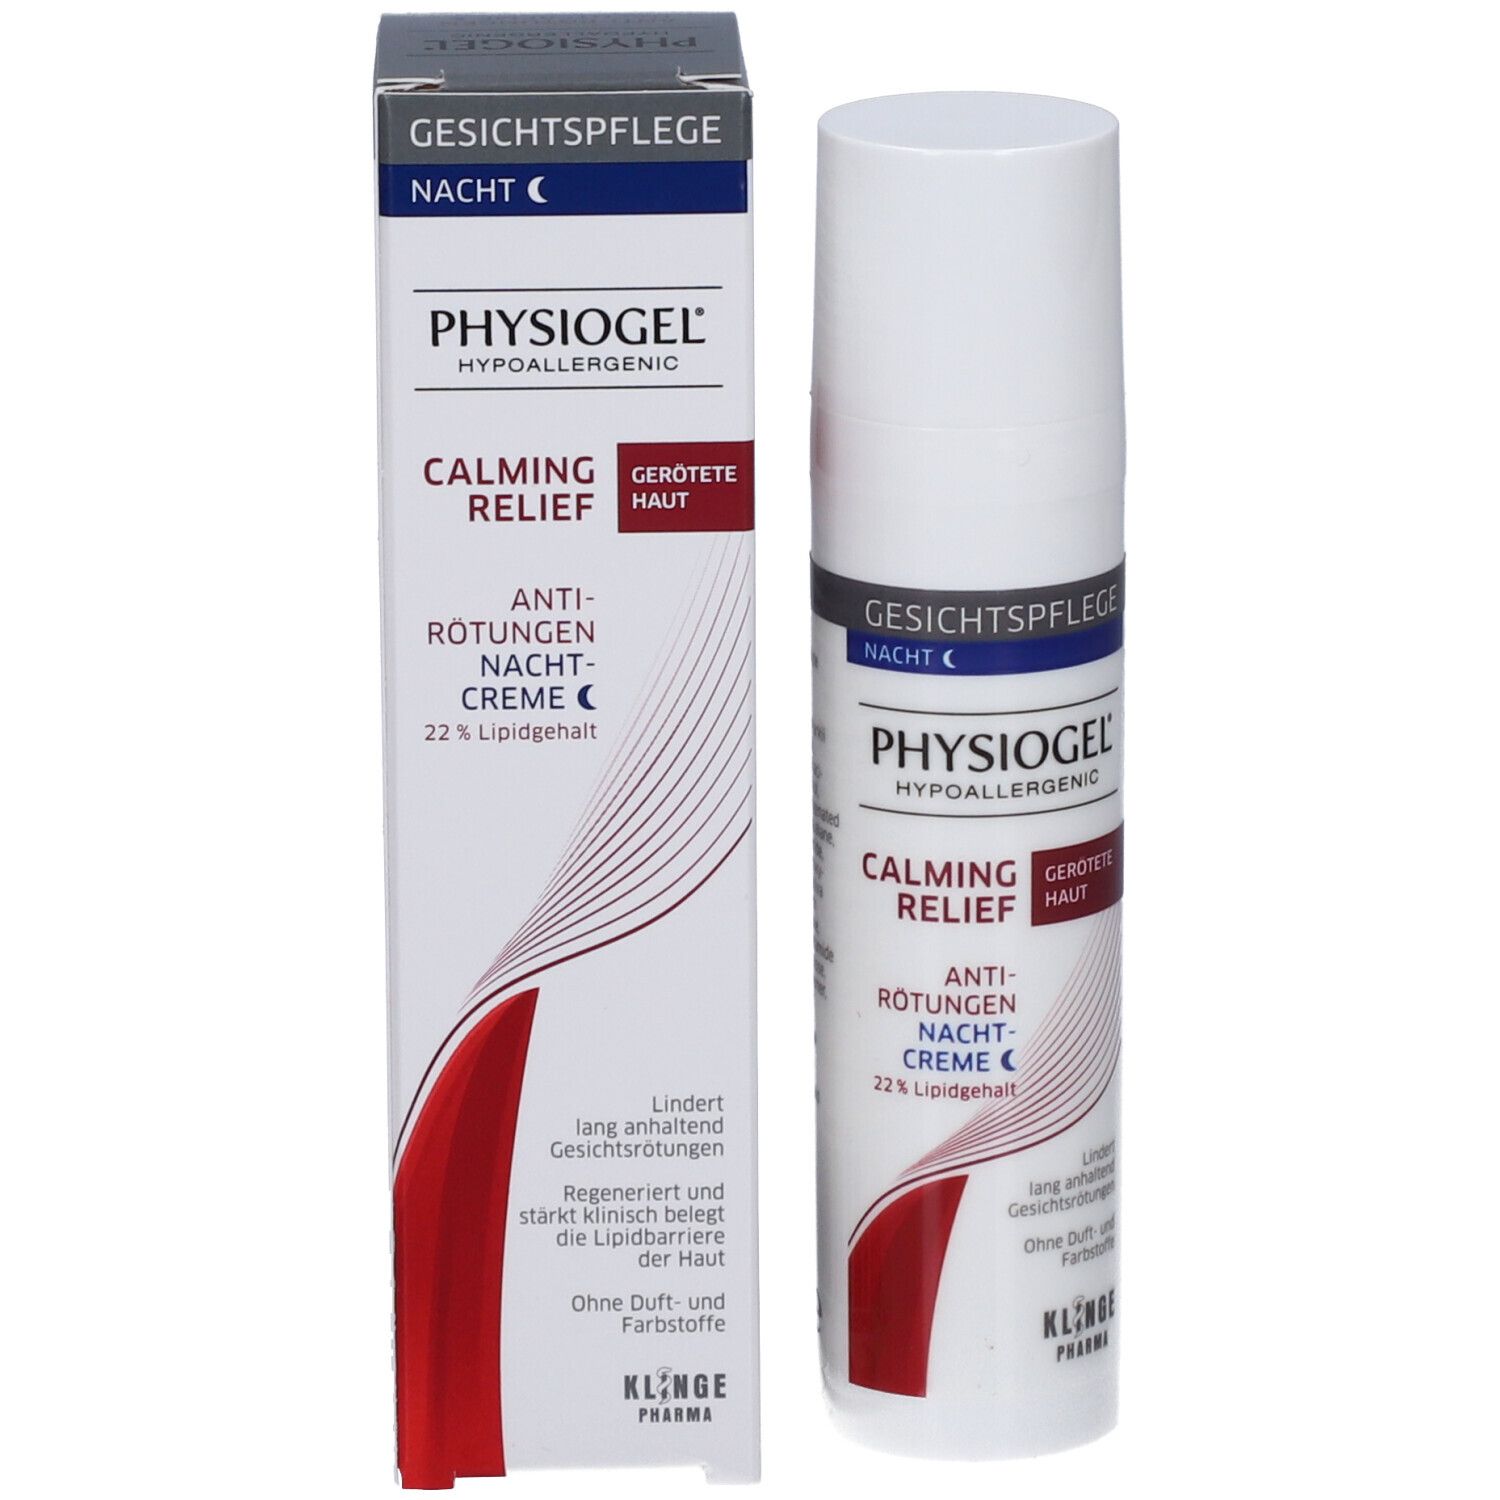 PHYSIOGEL® Calming Relief Anti-Rötungen Nachtcreme 40ml - gerötete Haut